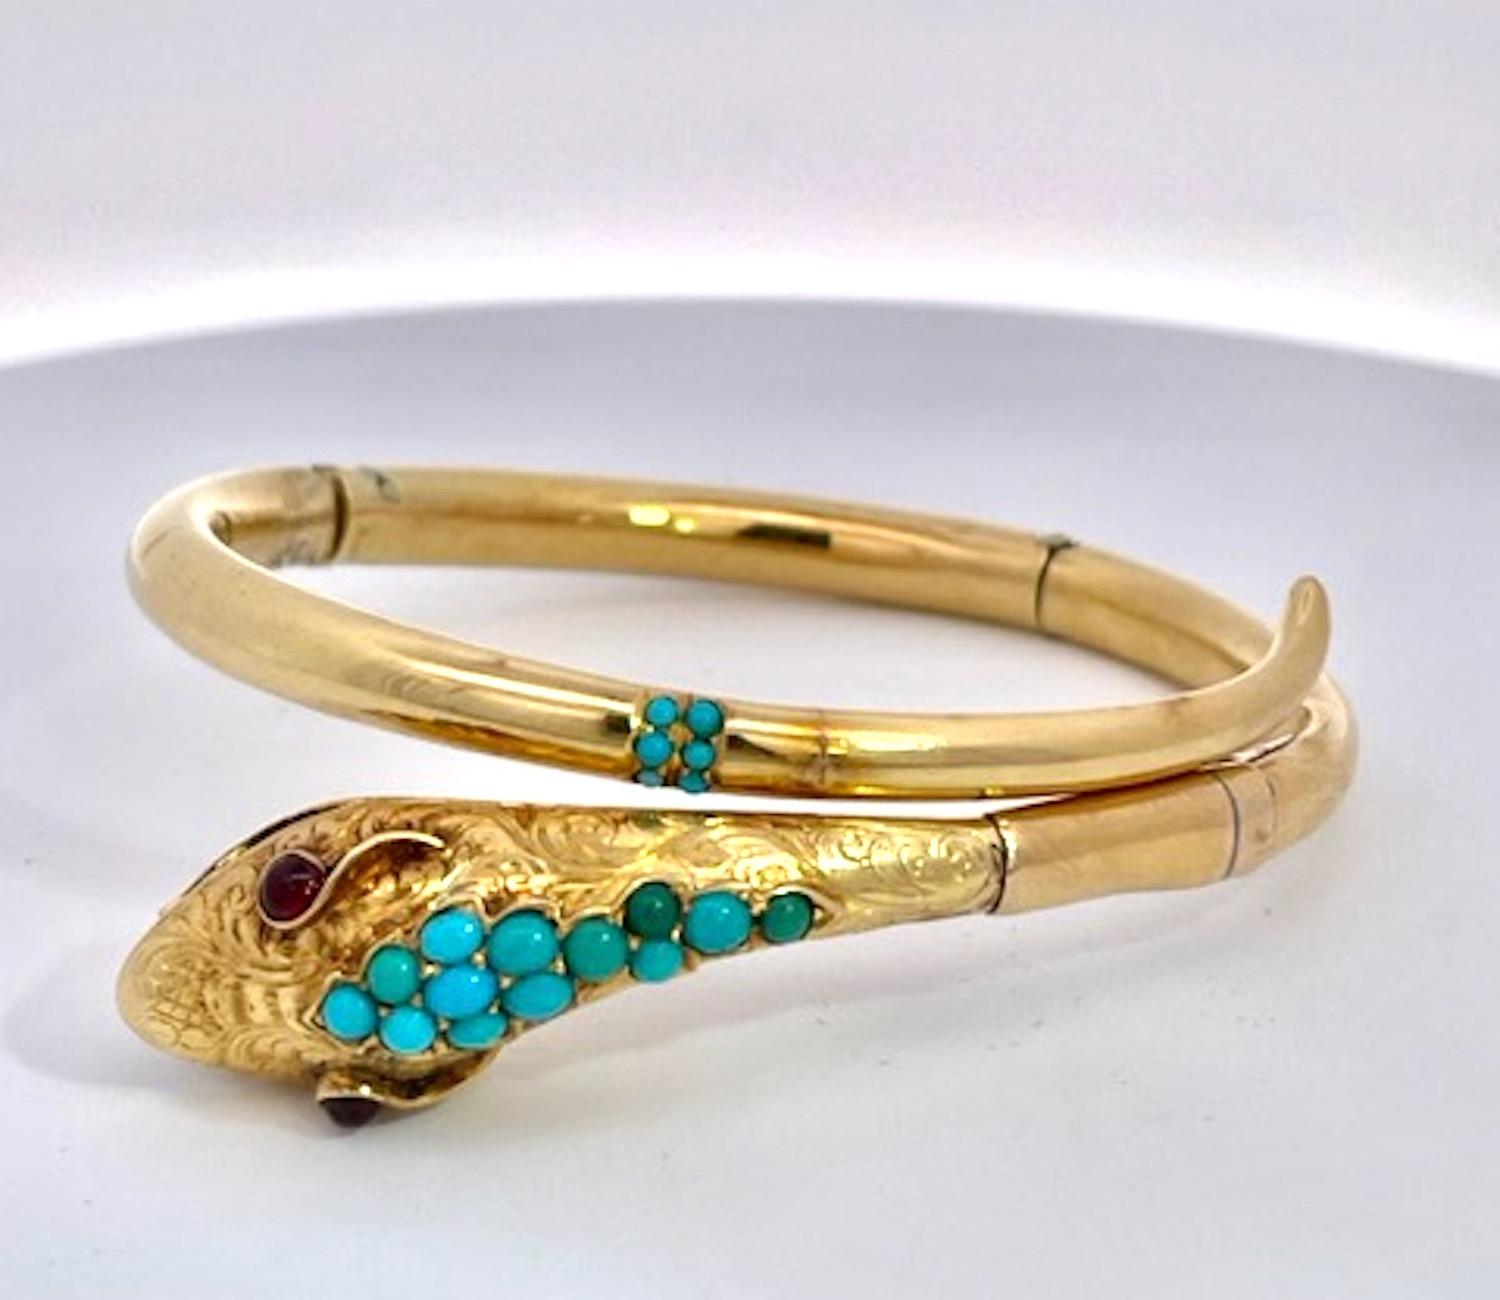 Hier haben wir ein weiteres schönes Schlangenarmband.
Dieses Exemplar ist aus 14K Gelbgold gefertigt und mit wunderschönen (persischen) Türkisperlen am Kopf und einigen verstreuten Perlen am Schwanz geschmückt.  Dieses Armband ist schlicht und